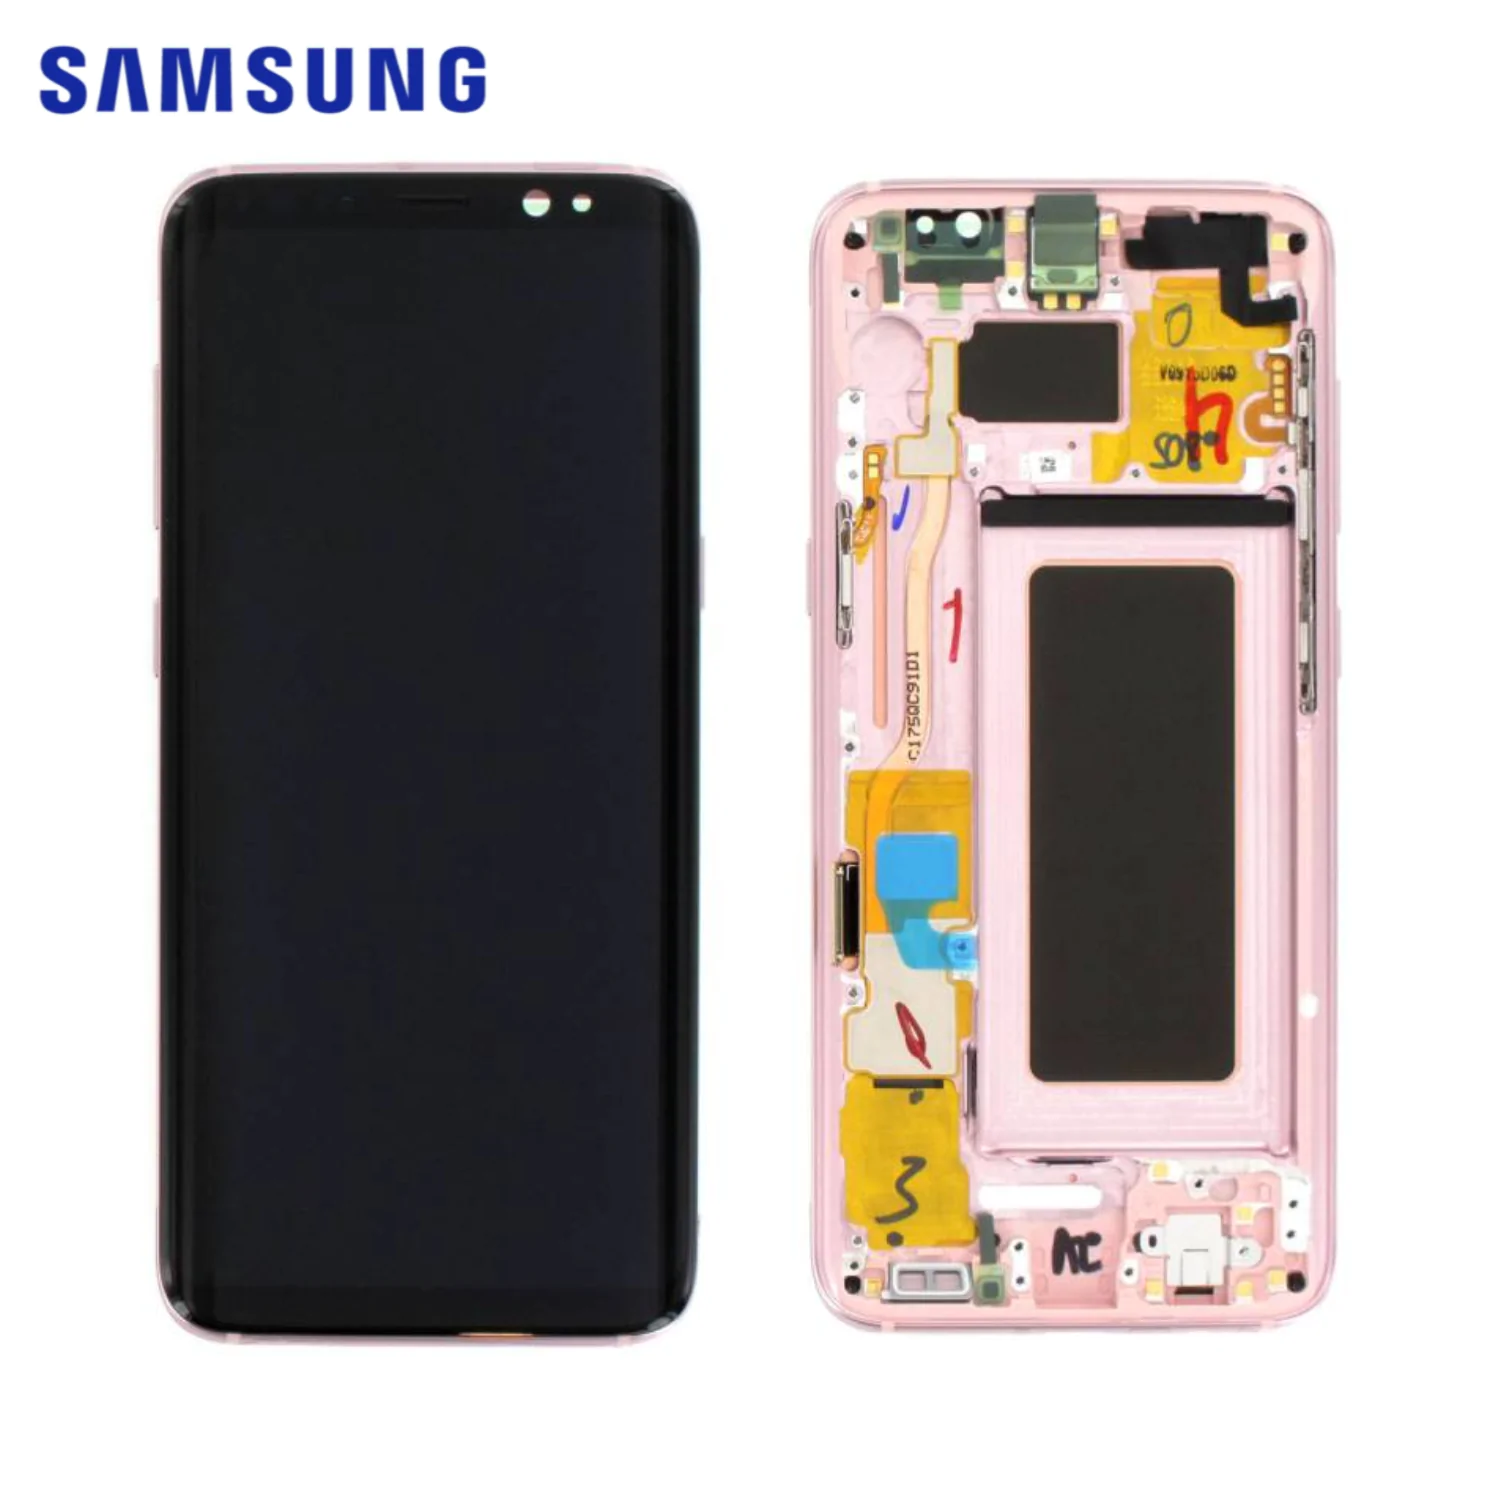 Ecran & Tactile Original Samsung Galaxy S8 G950 GH97-20457E Rose Gold